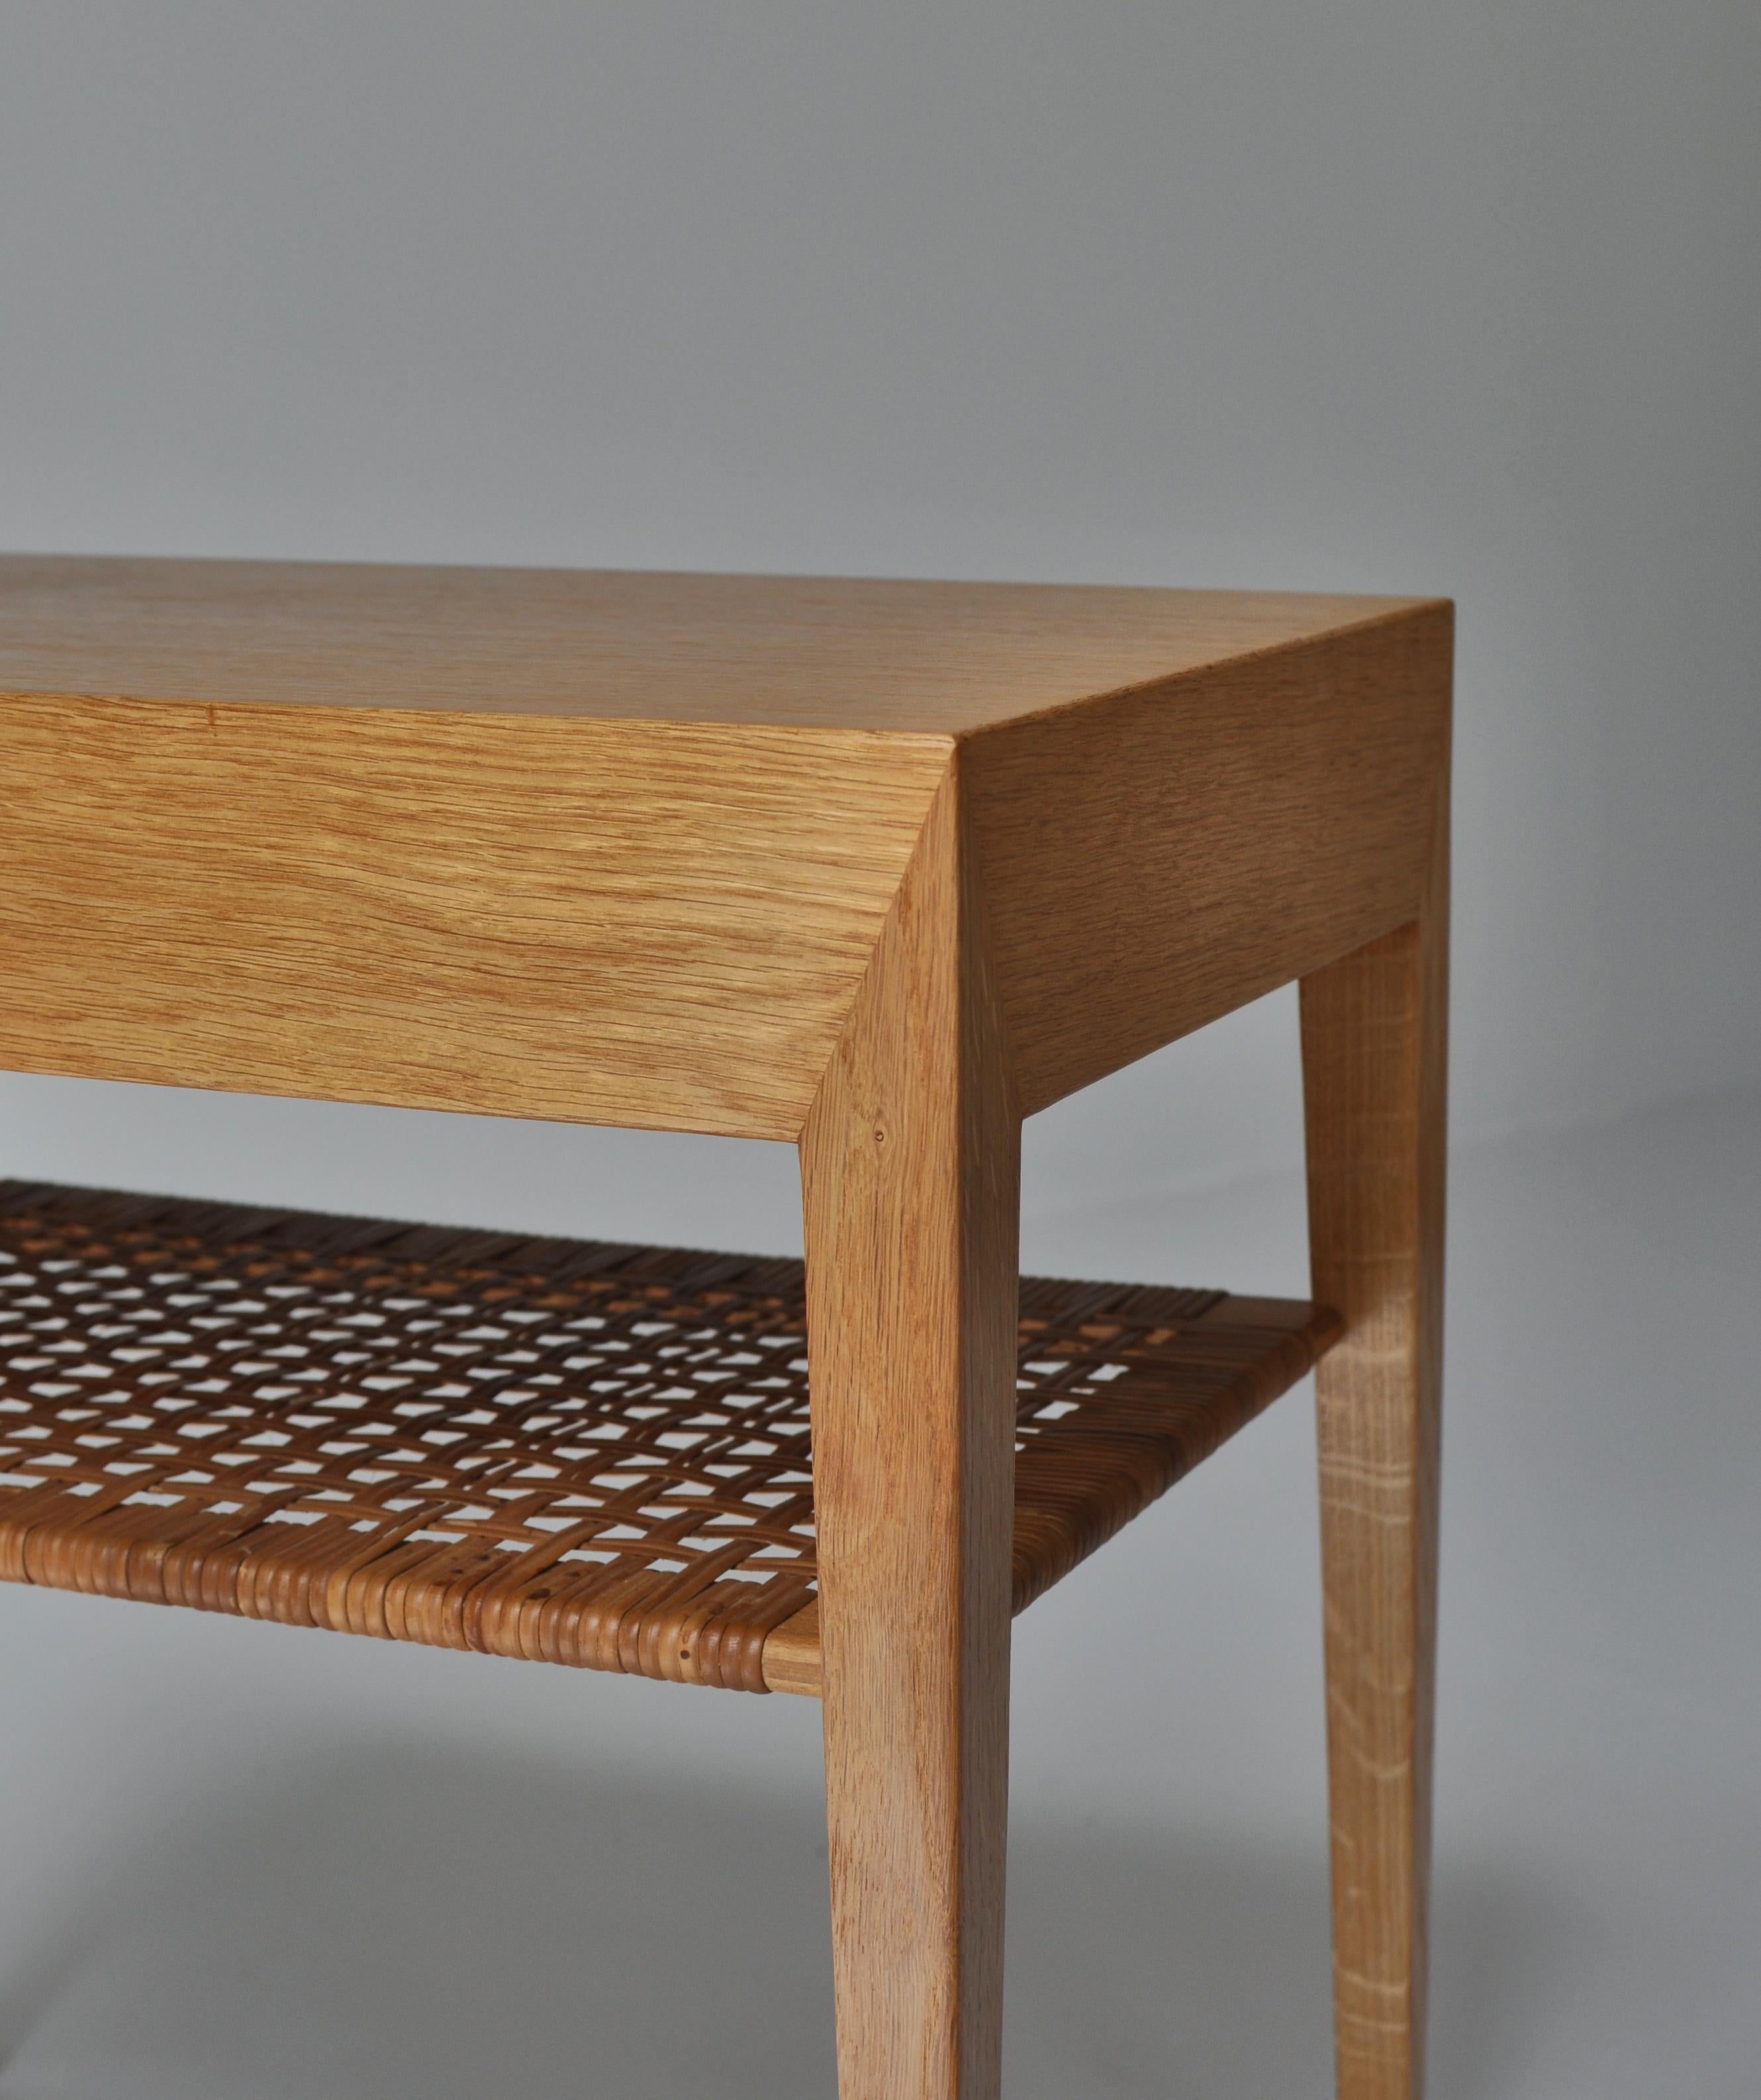 Scandinavian Modern Danish Modern Oak Side Table with Shelf in Rattan Cane by Severin Hansen, 1950s